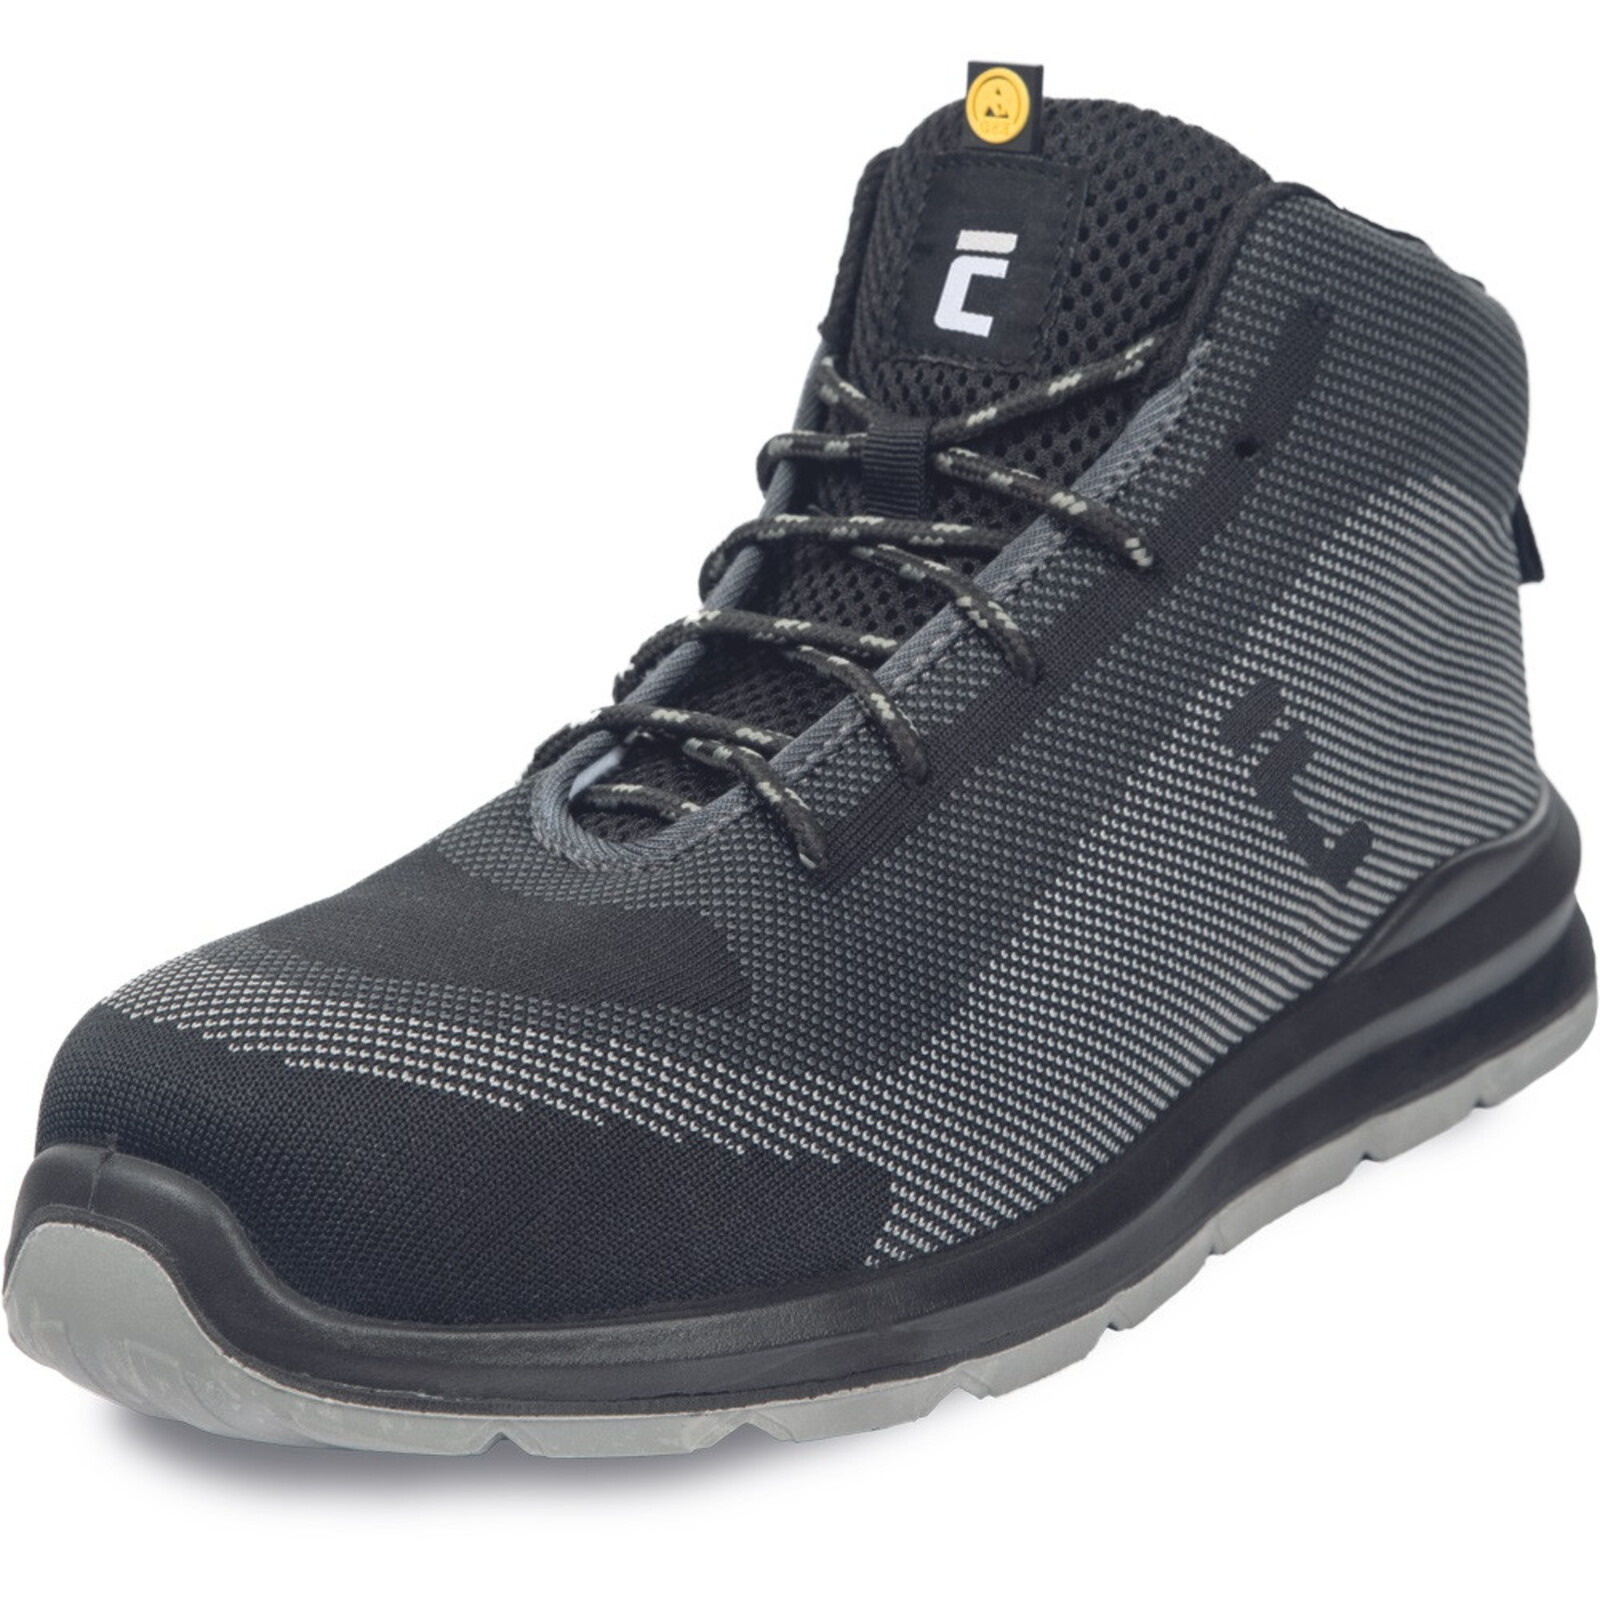 Bezpečnostná členková obuv Cerva Vadorros S1P MF ESD SRC - veľkosť: 42, farba: sivá/čierna